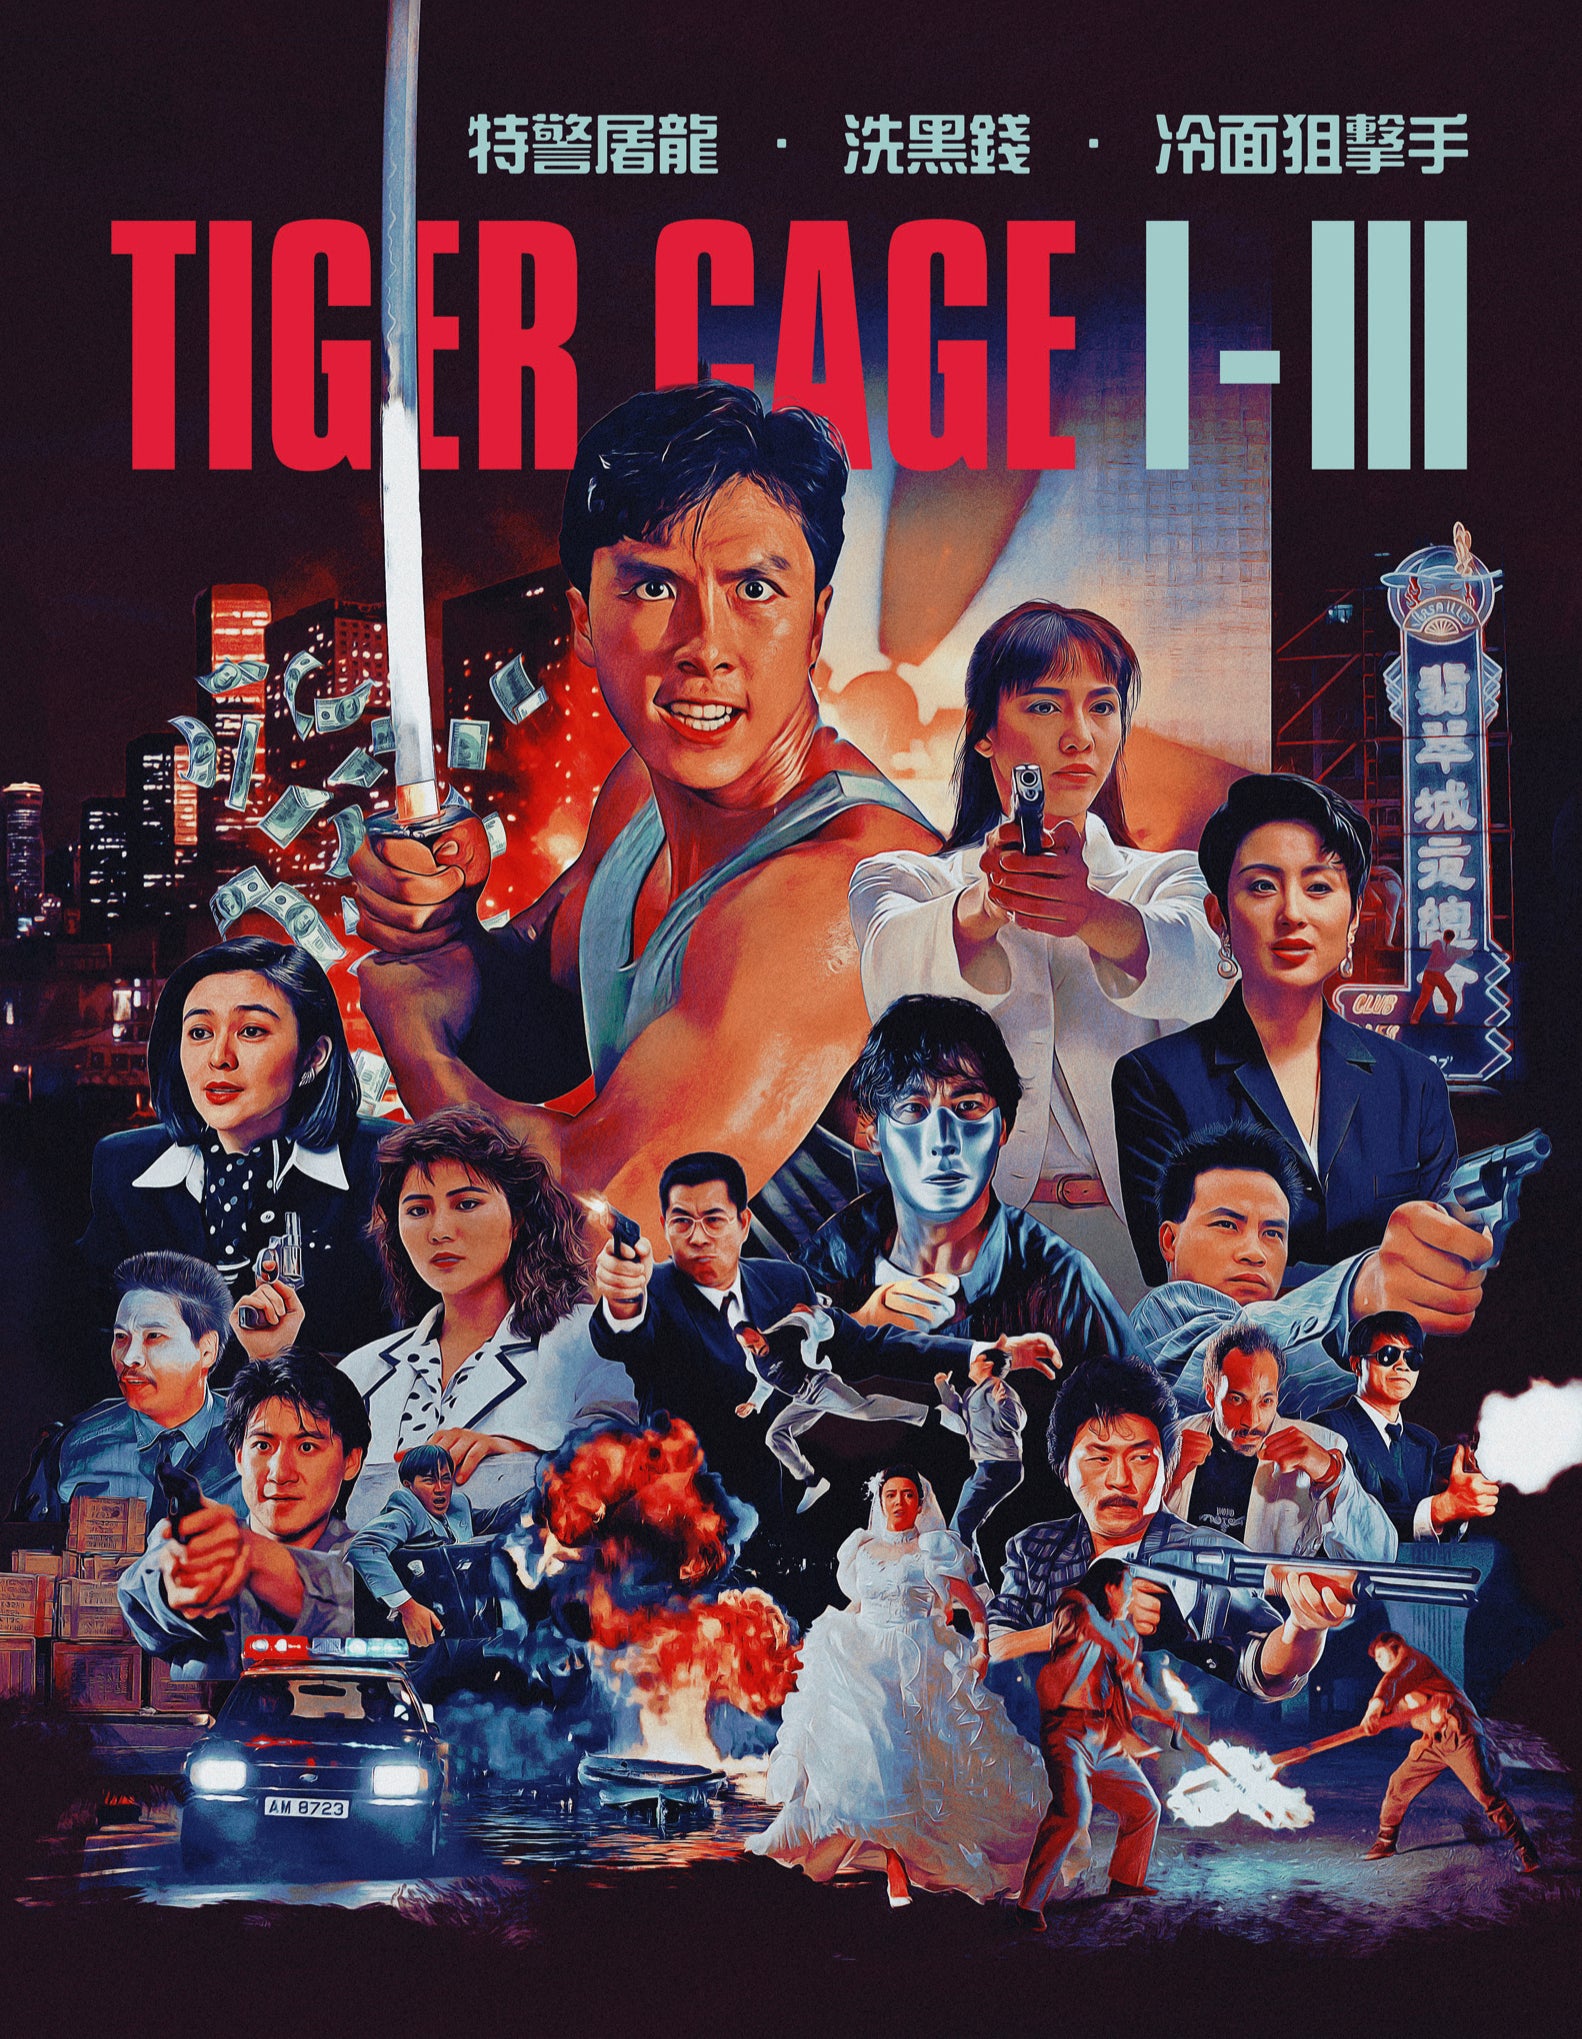 Tiger Cage Trilogy – 88 Films